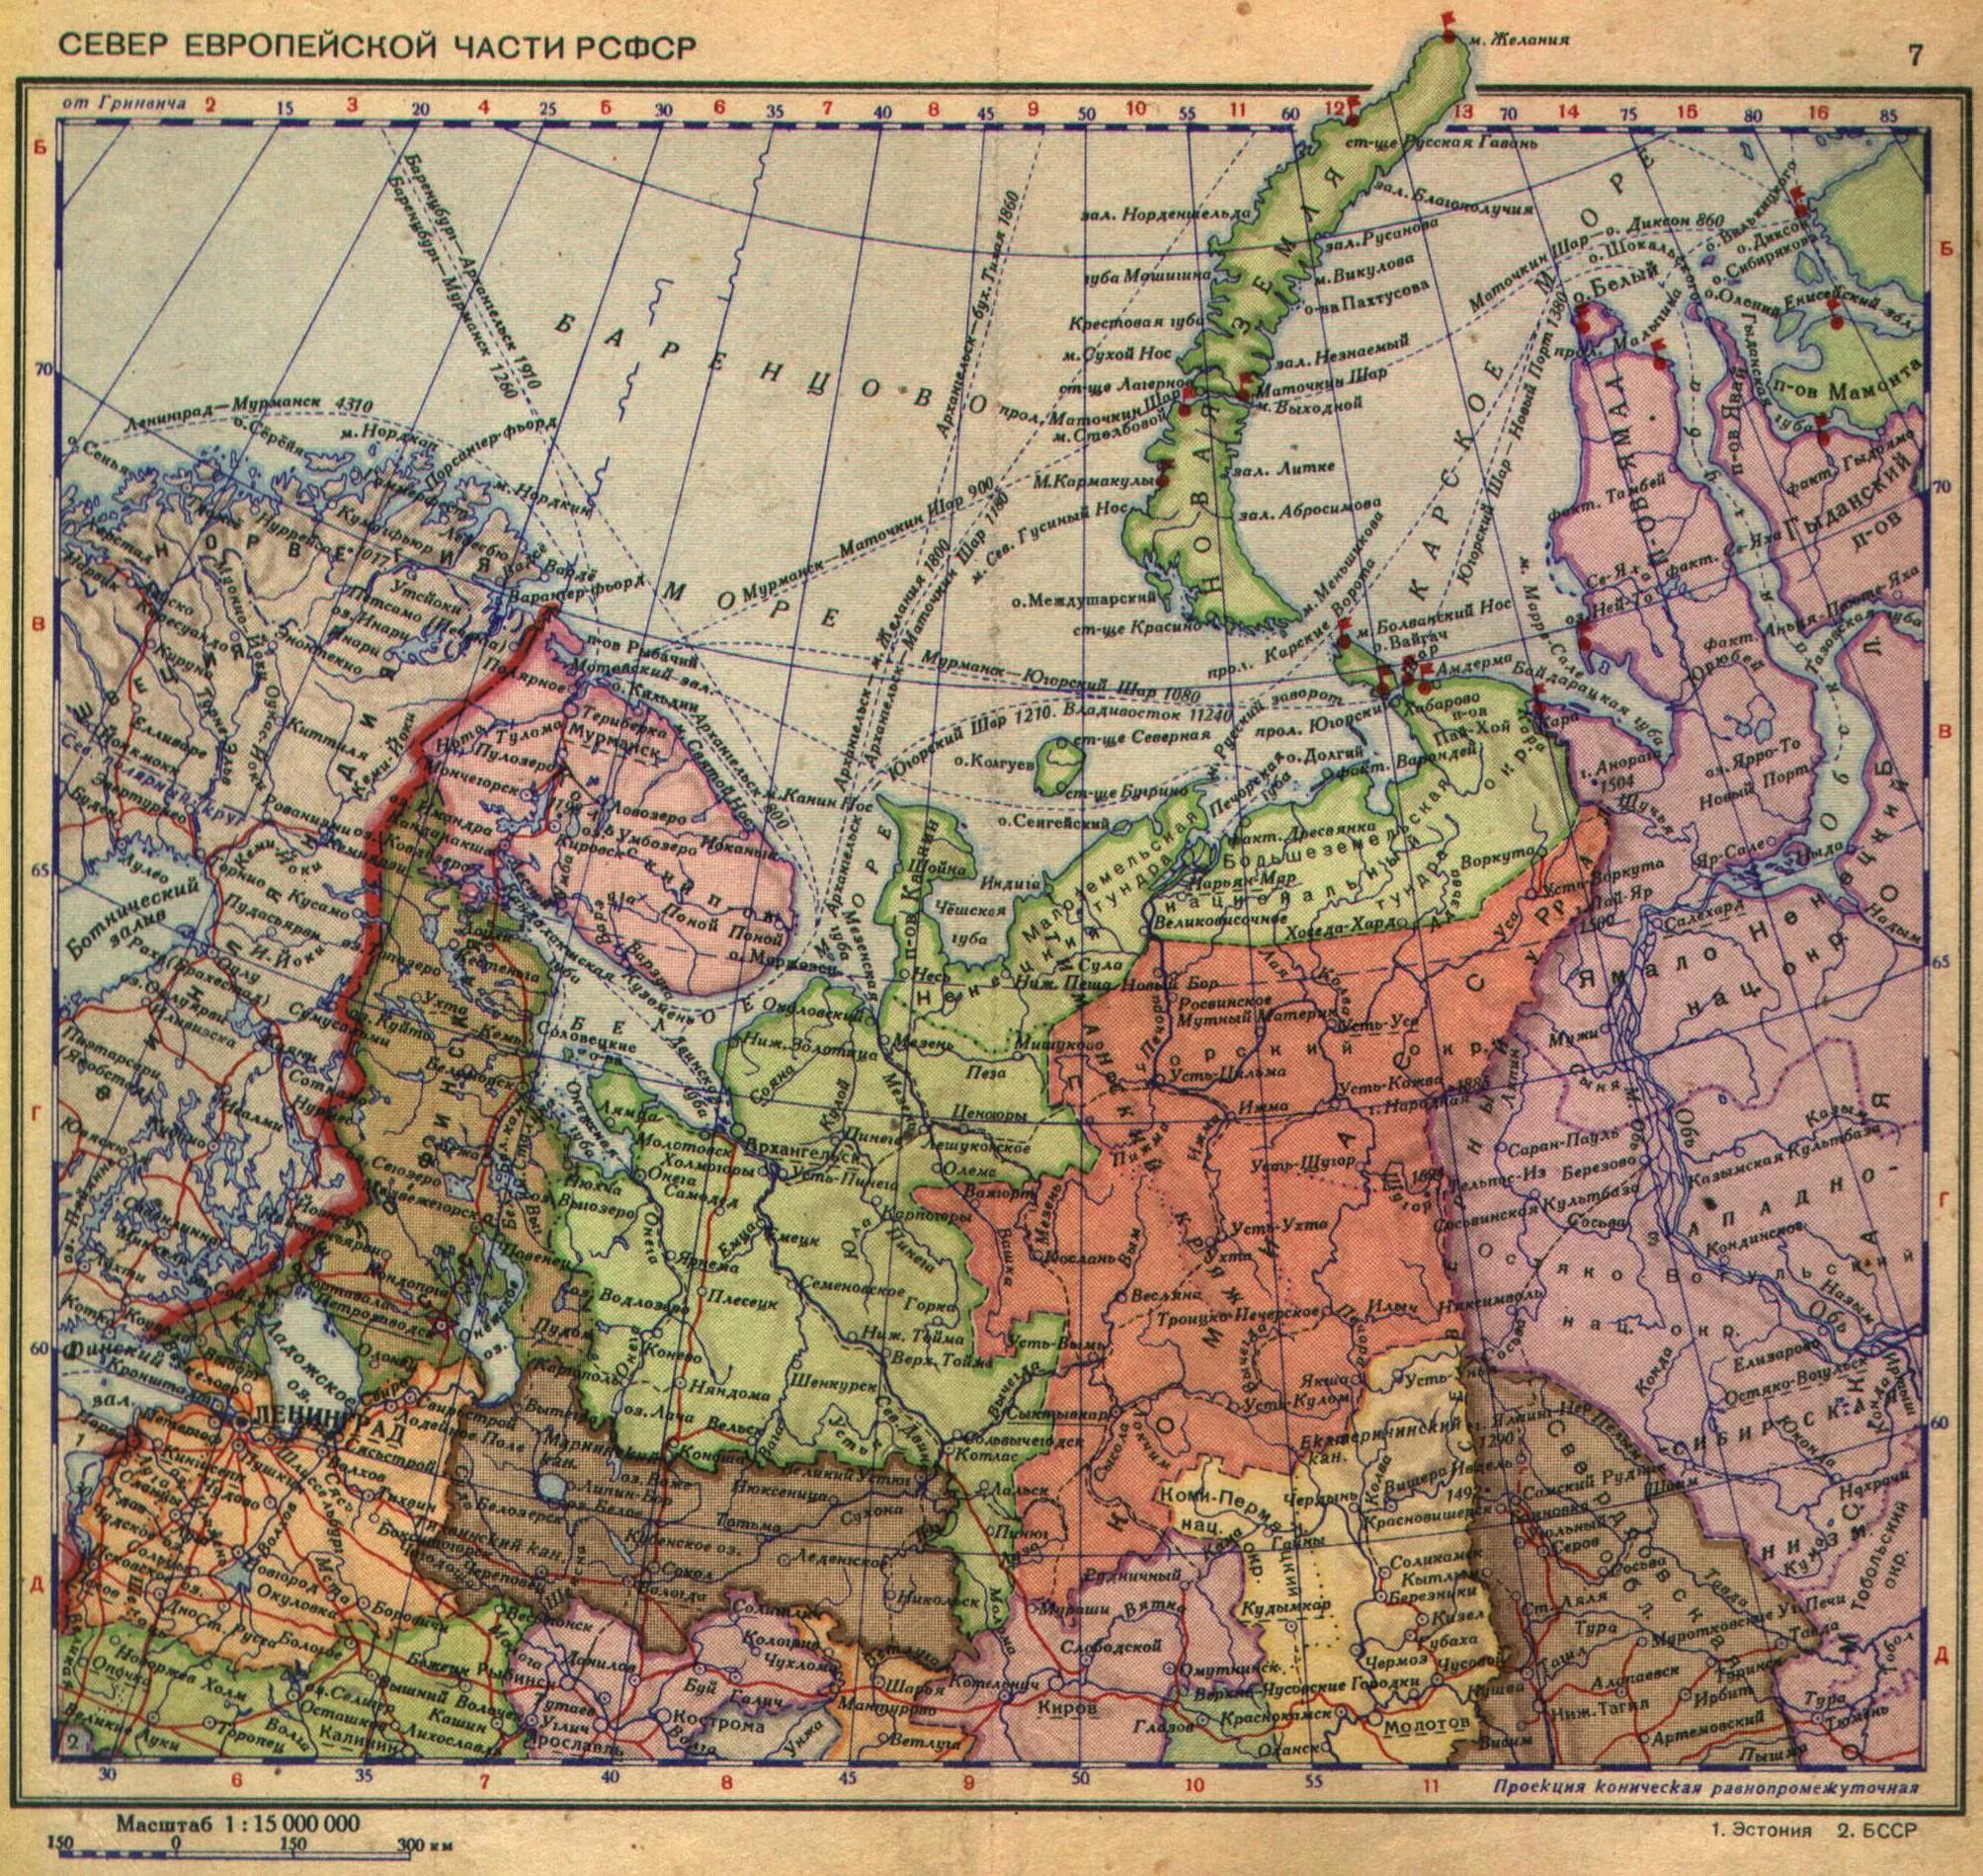 Карта СССР 1940 года. Атлас европейской части СССР. Карта европейской части СССР 1940 года. Политическая карта России до 1939 года.